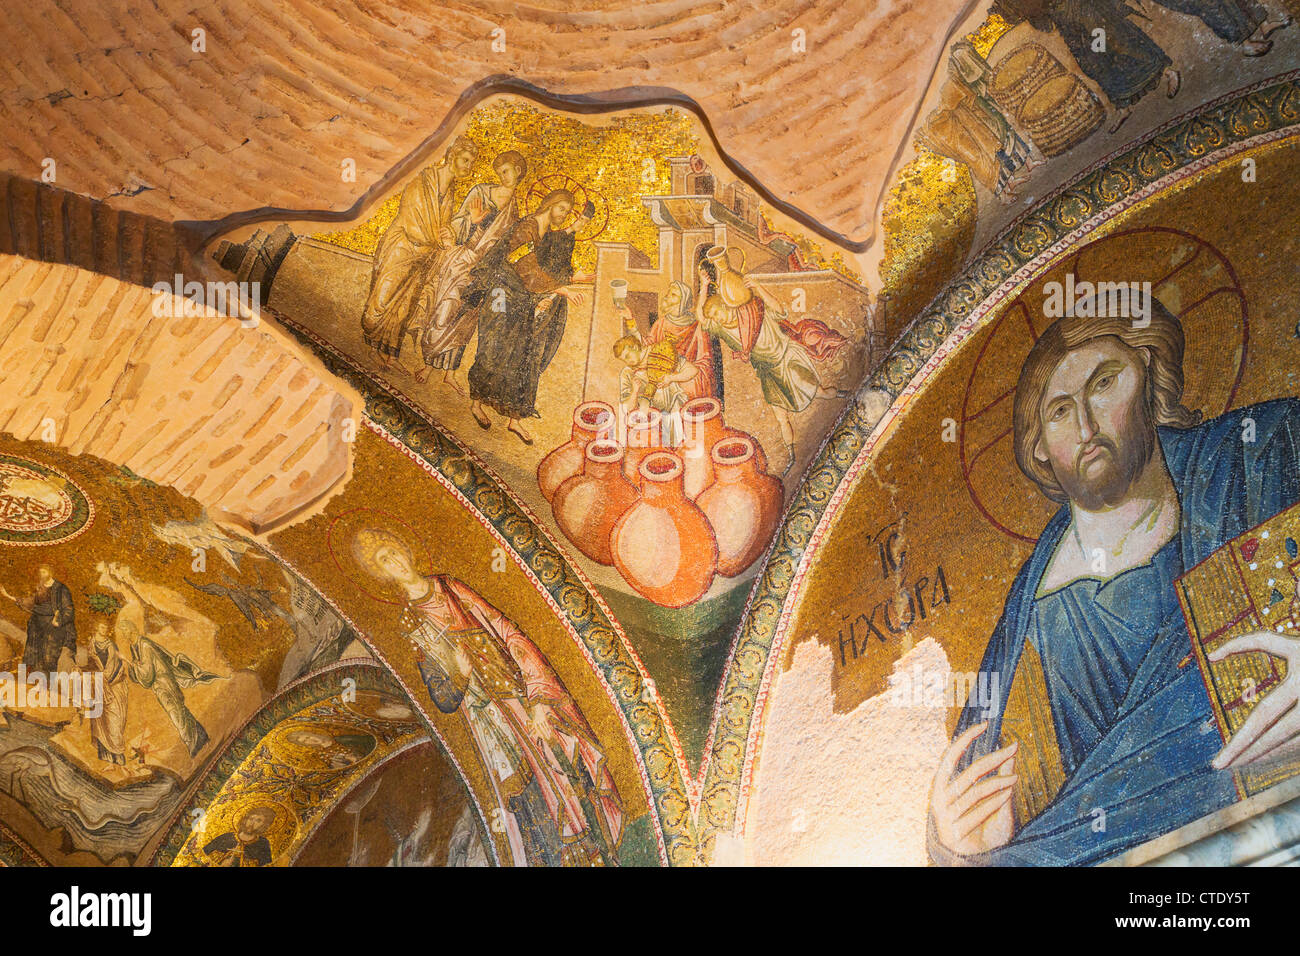 Istanbul, Turchia. La chiesa bizantina di San Salvatore in Chora. Mosaici, compreso il miracolo del vino e acqua e Gesù Cristo. Foto Stock